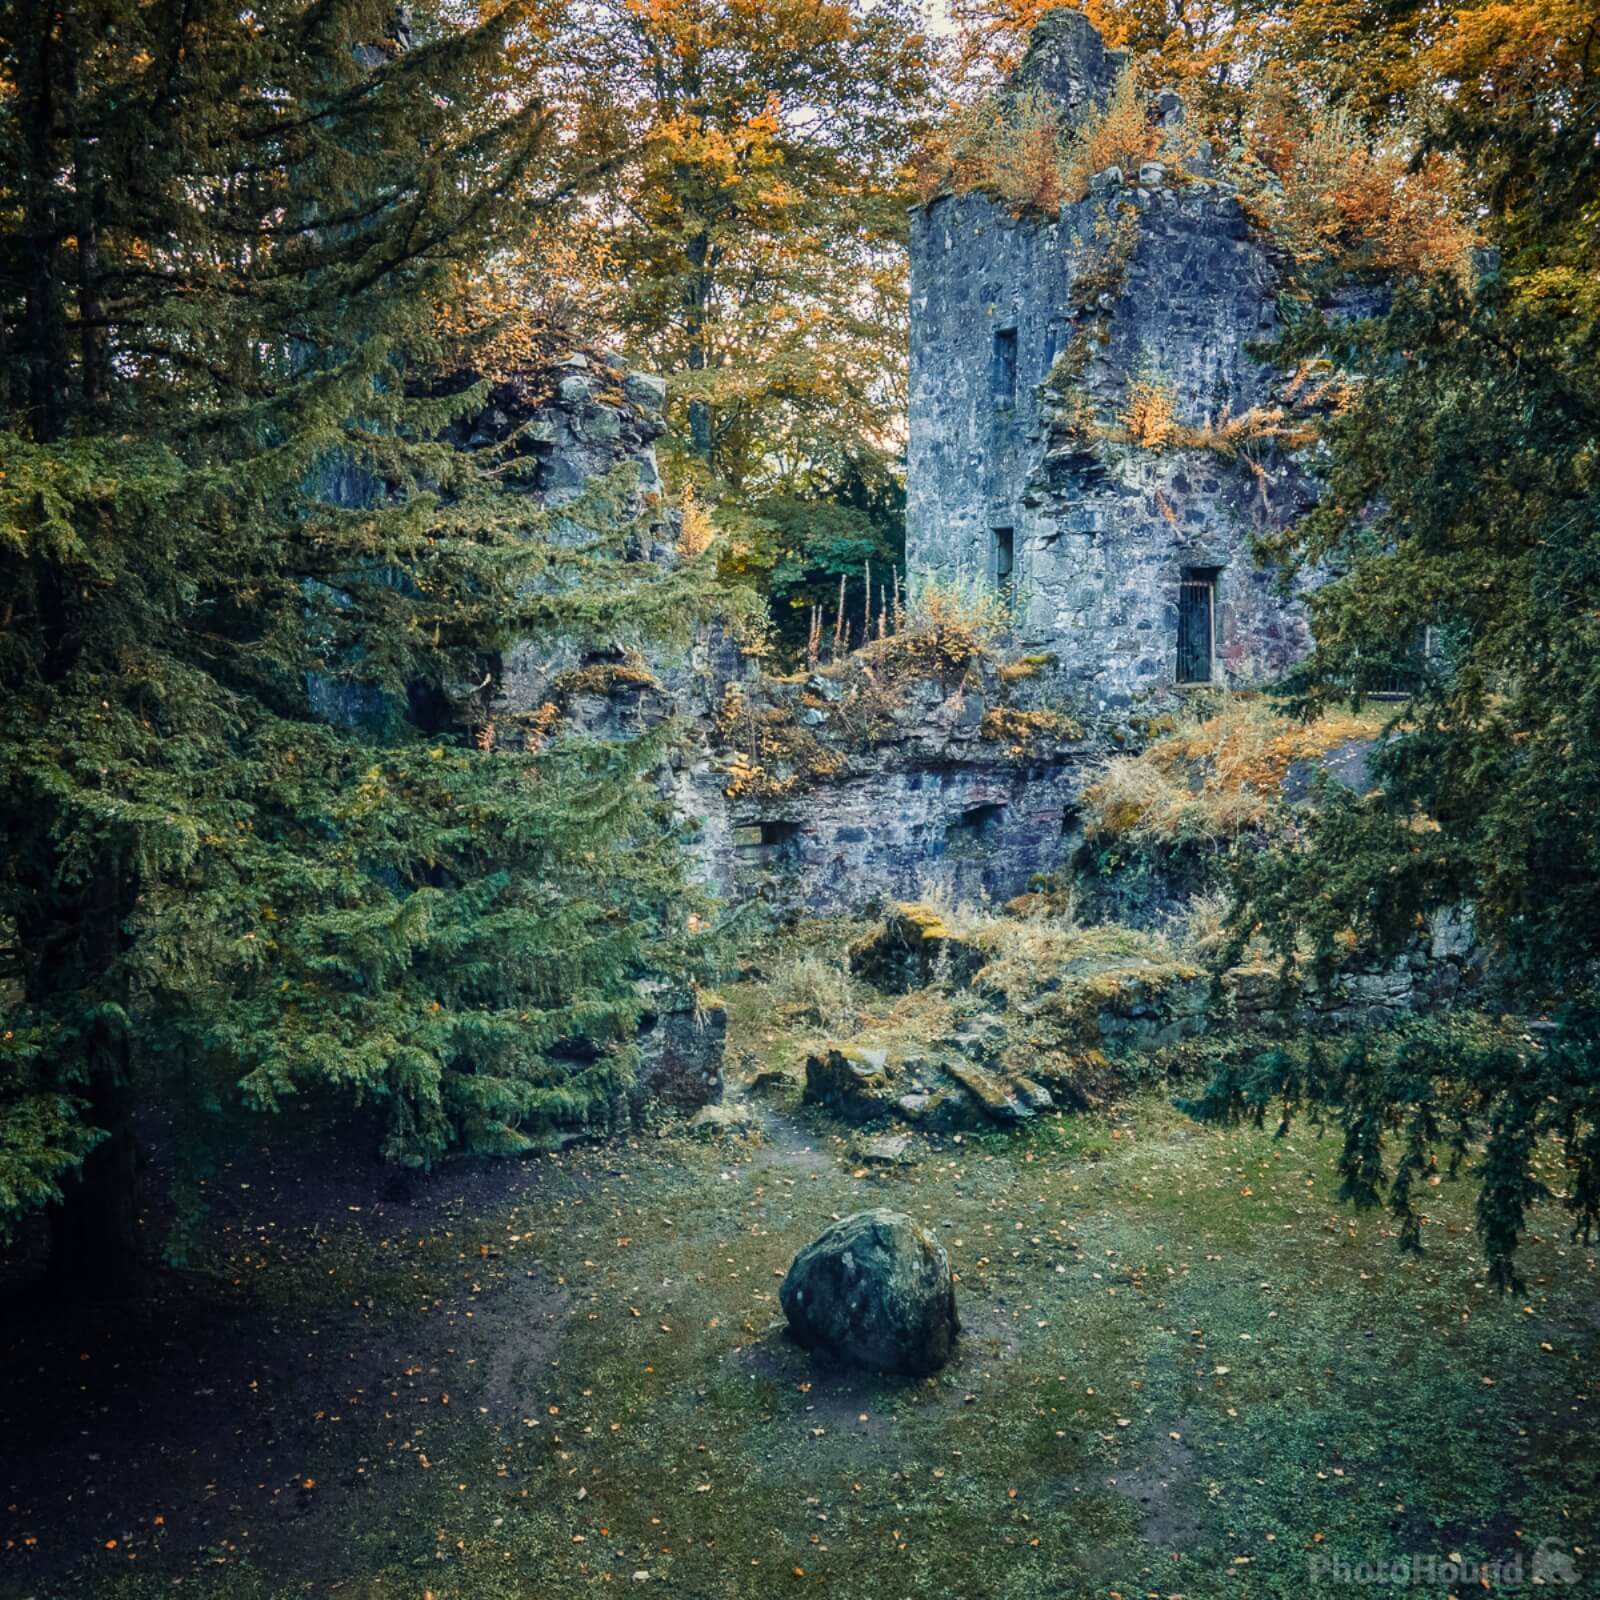 Image of Finlarig Castle by James Billings.